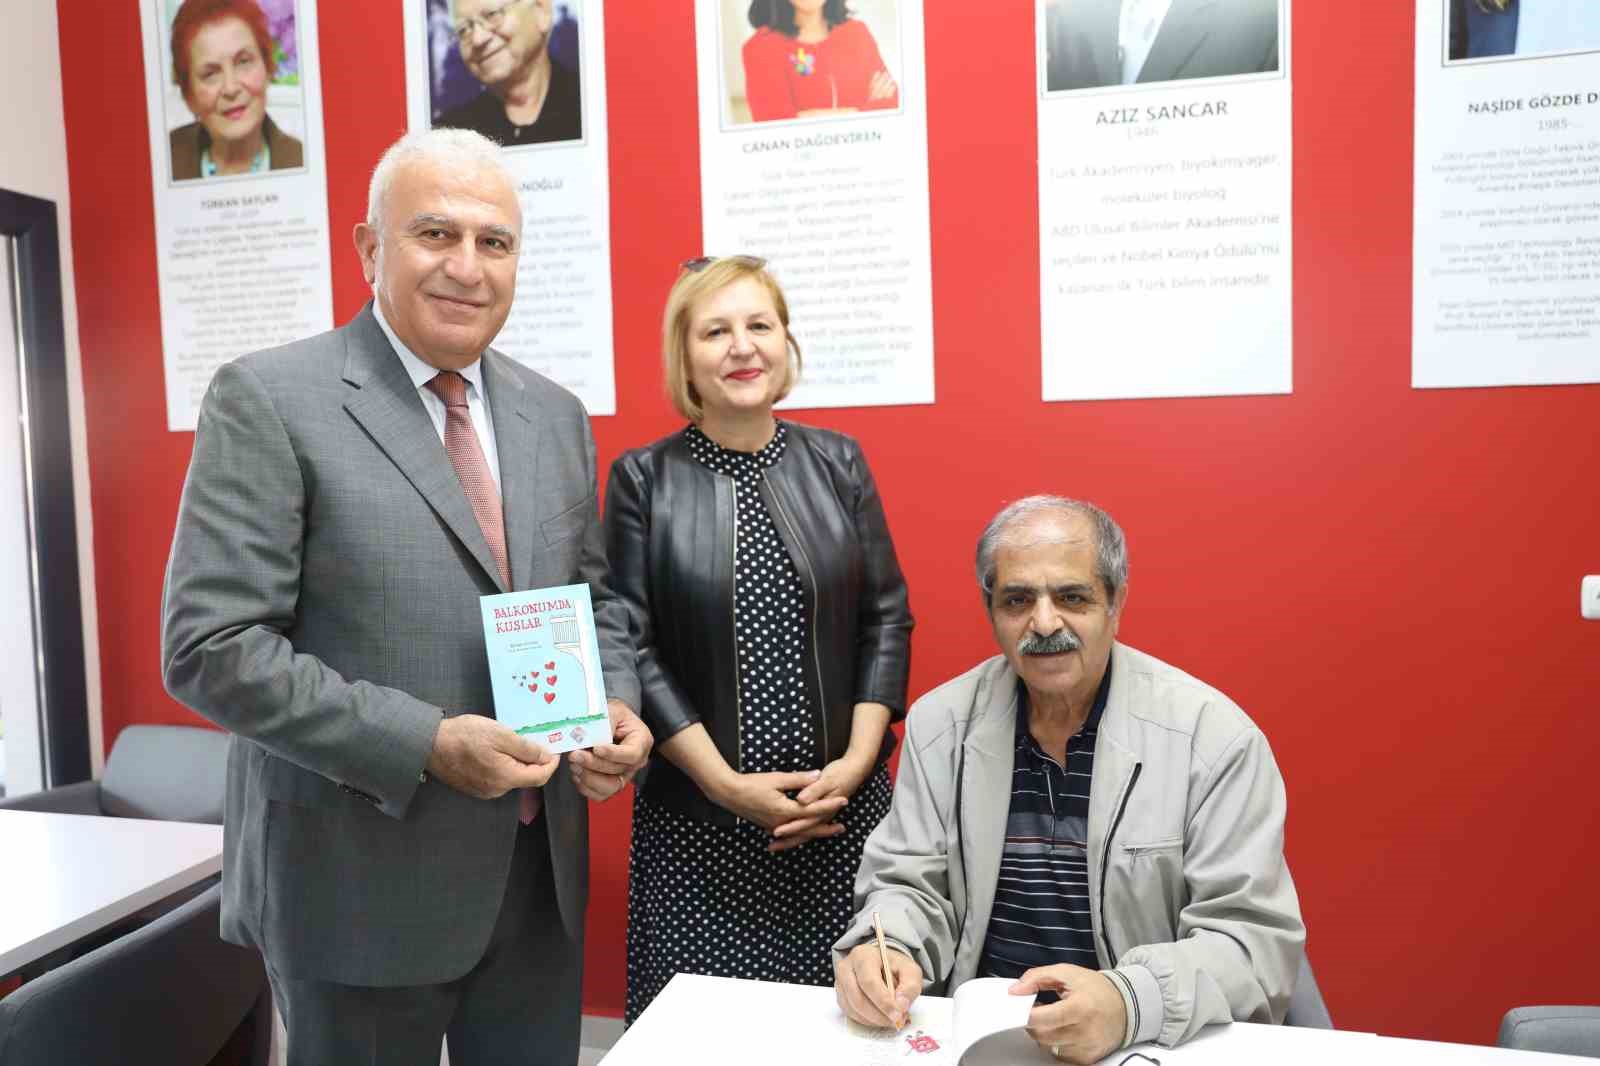 Efeler’de 13’üncü Kitap Kafe Kardeşköy Mahallesi’nde açıldı